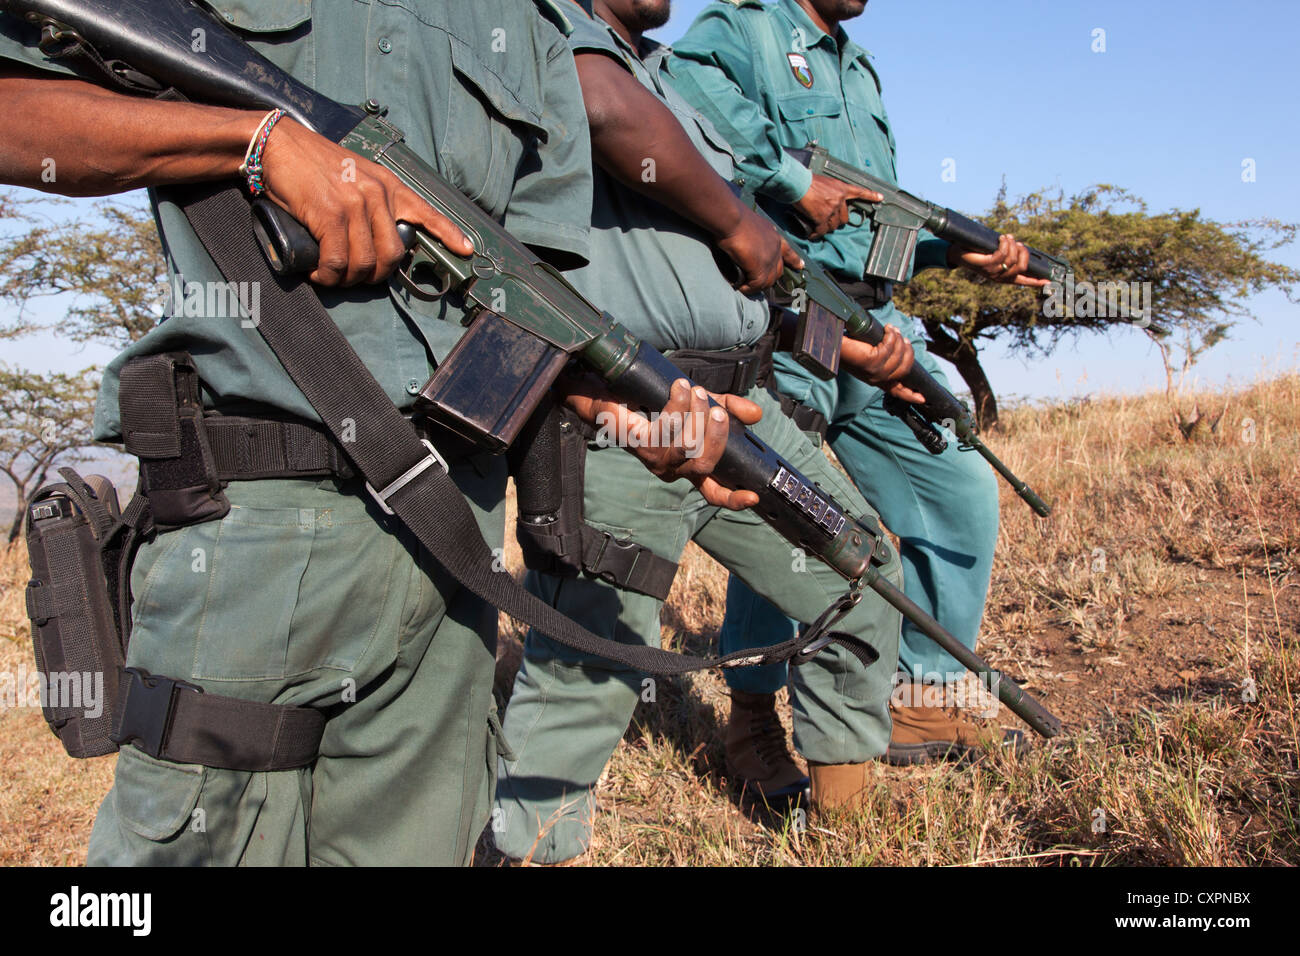 Anti-poaching unit, Ezemvelo KZN Wildlife, iMfolozi game reserve, South Africa, Stock Photo